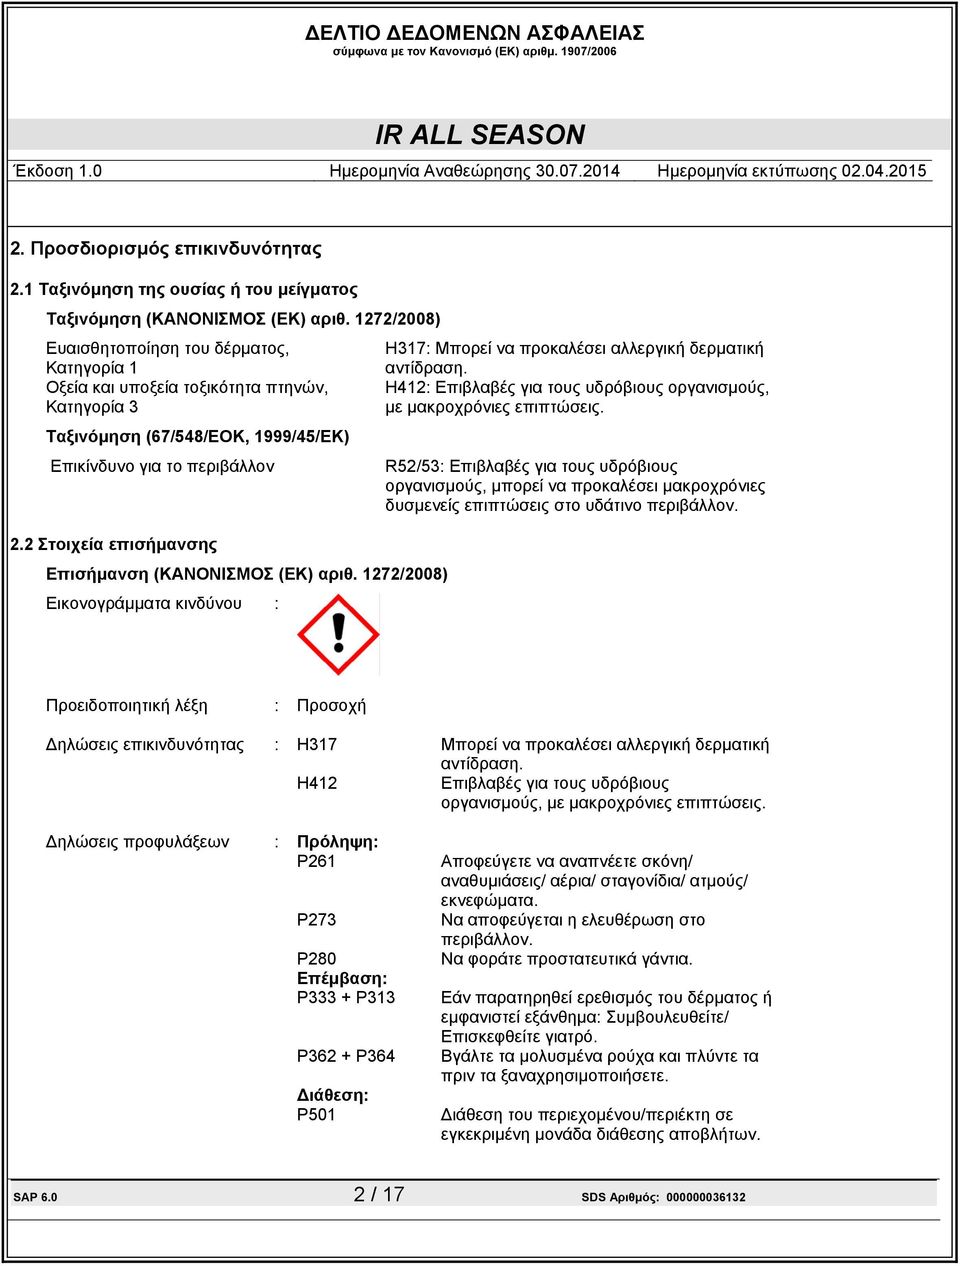 2 Στοιχεία επισήµανσης Επισήµανση (ΚΑΝΟΝΙΣΜΟΣ (ΕΚ) αριθ. 1272/2008) Εικονογράµµατα κινδύνου : H317: Μπορεί να προκαλέσει αλλεργική δερµατική αντίδραση.